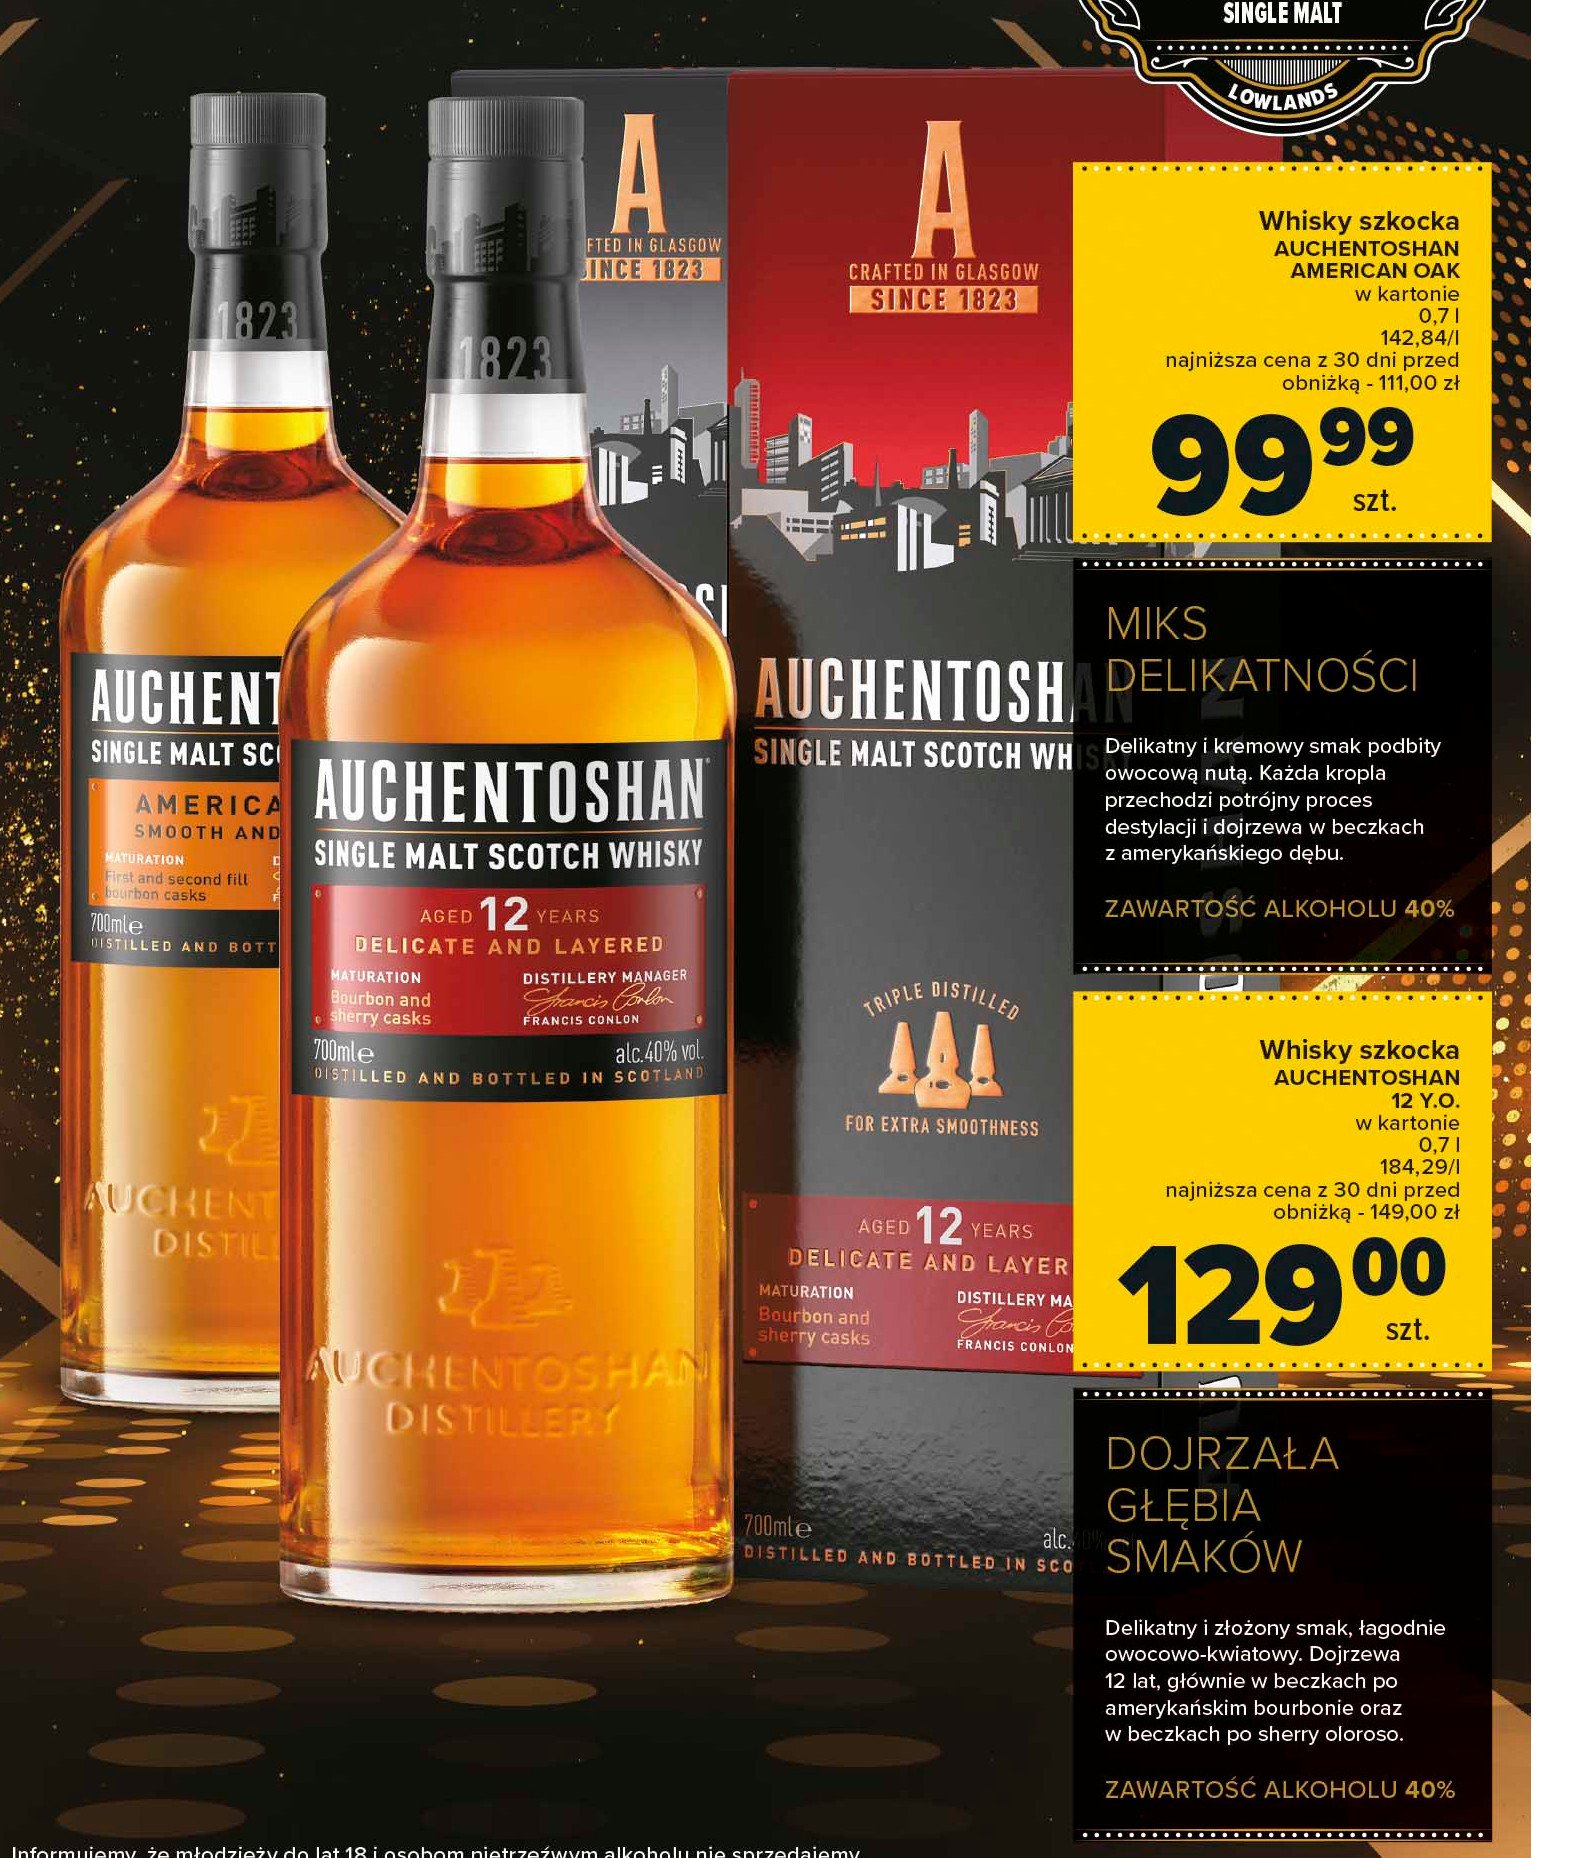 Whisky karton Auchentoshan 12 yo promocja